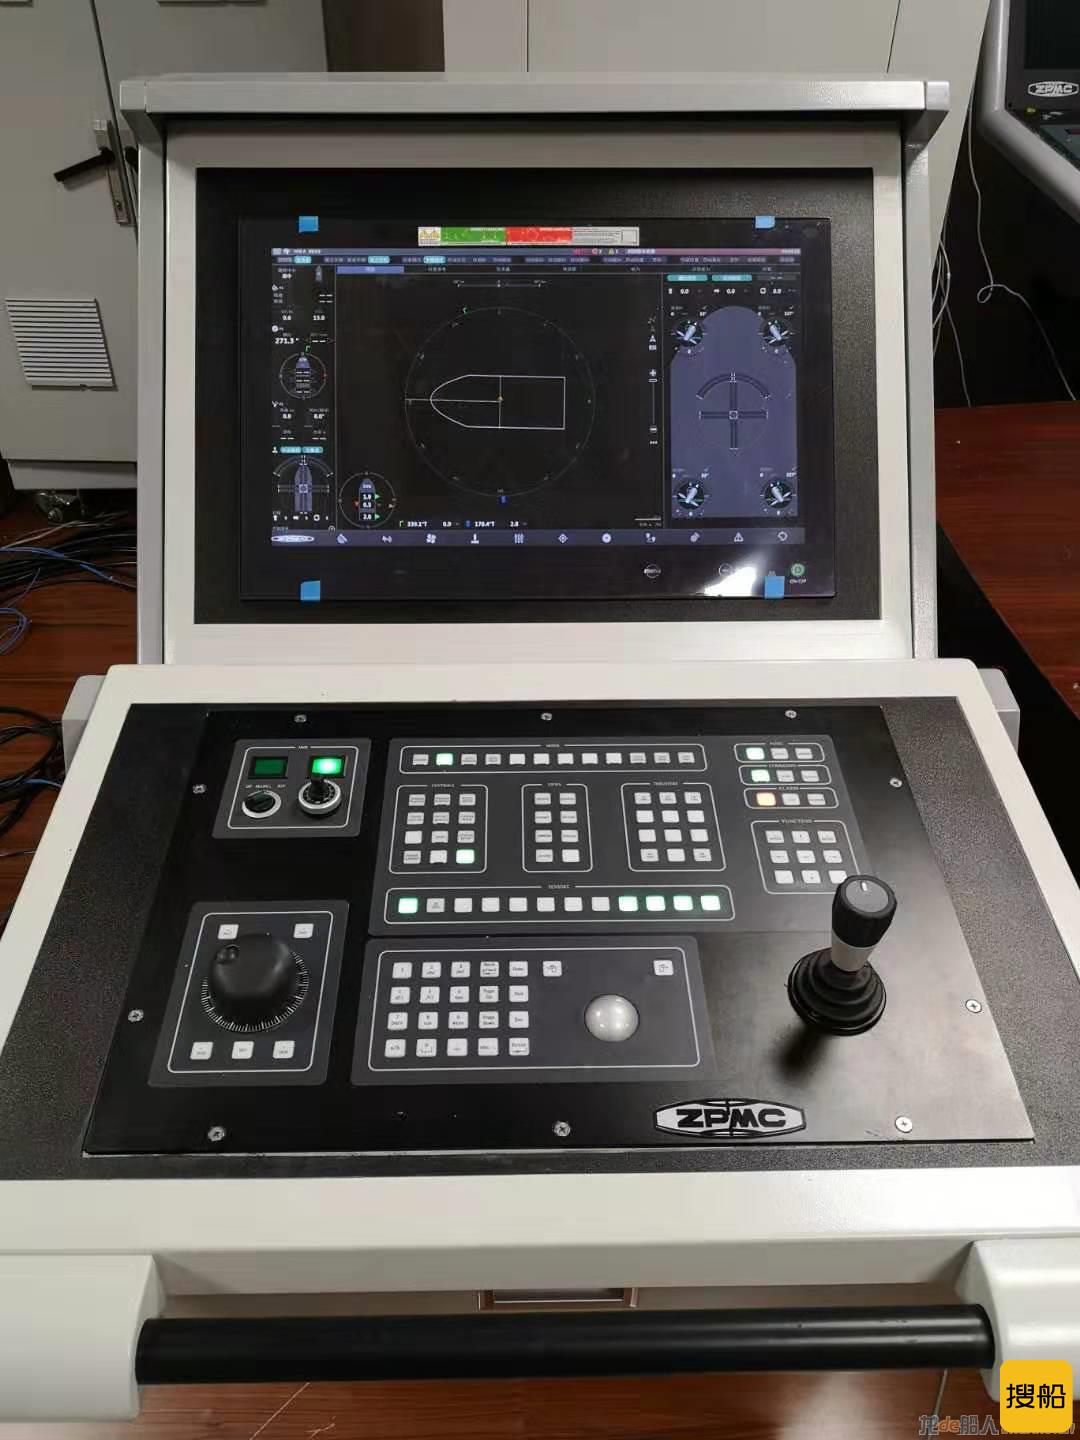 振华重工自研动力定位控制系统获得中国船级社型式认可